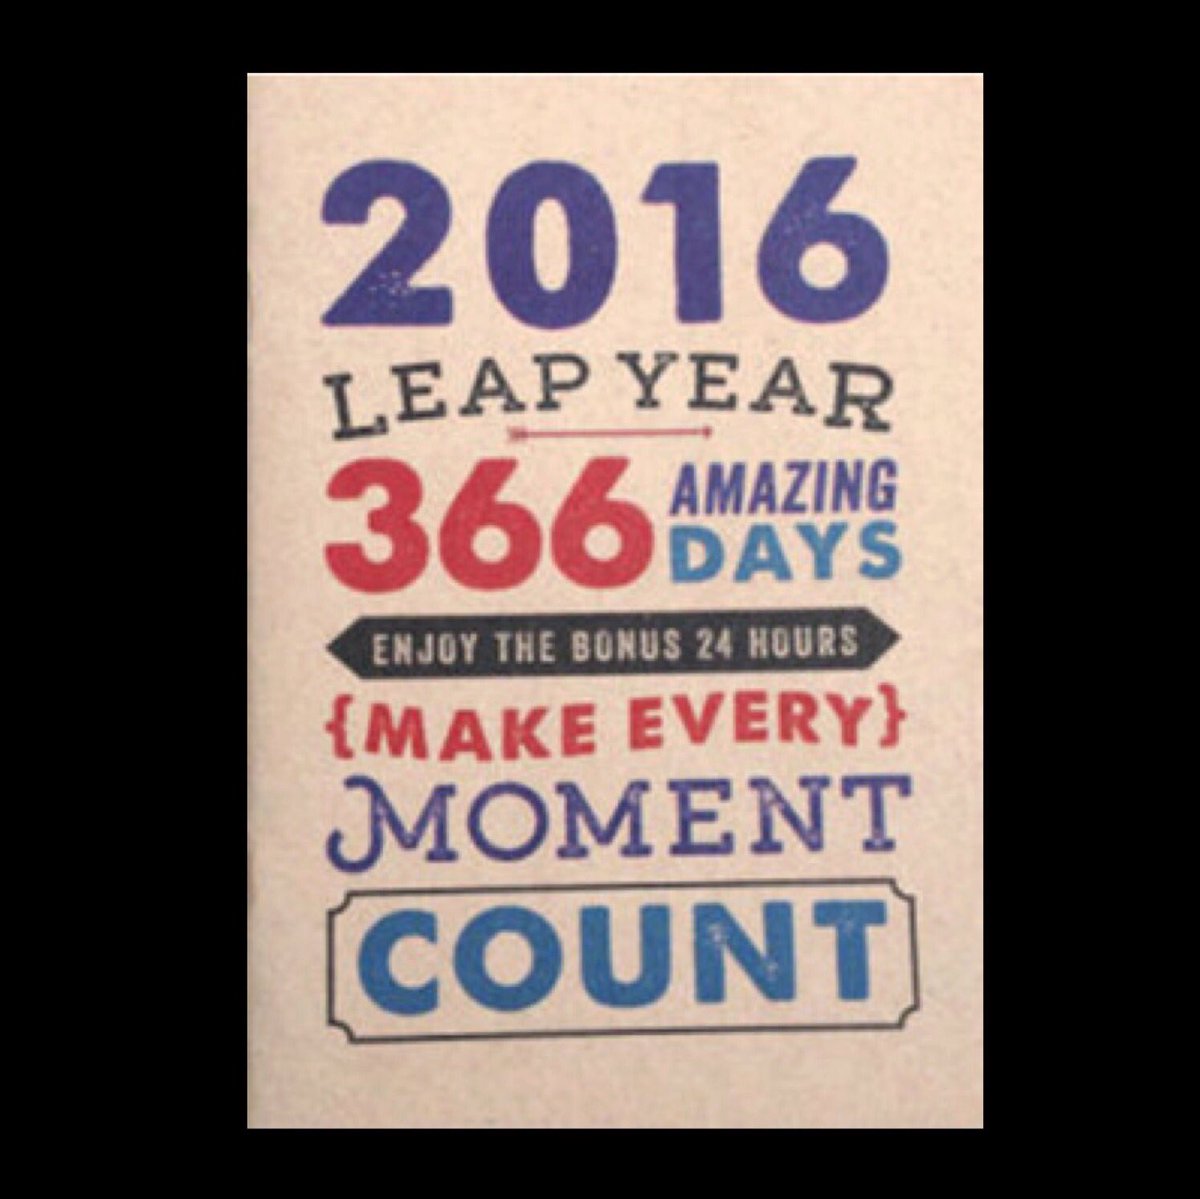 Високосный год день рождения. Високосный год картинки. Leap year 366 Days. 2016 Год високосный. 366-Й день года (Leap Day).